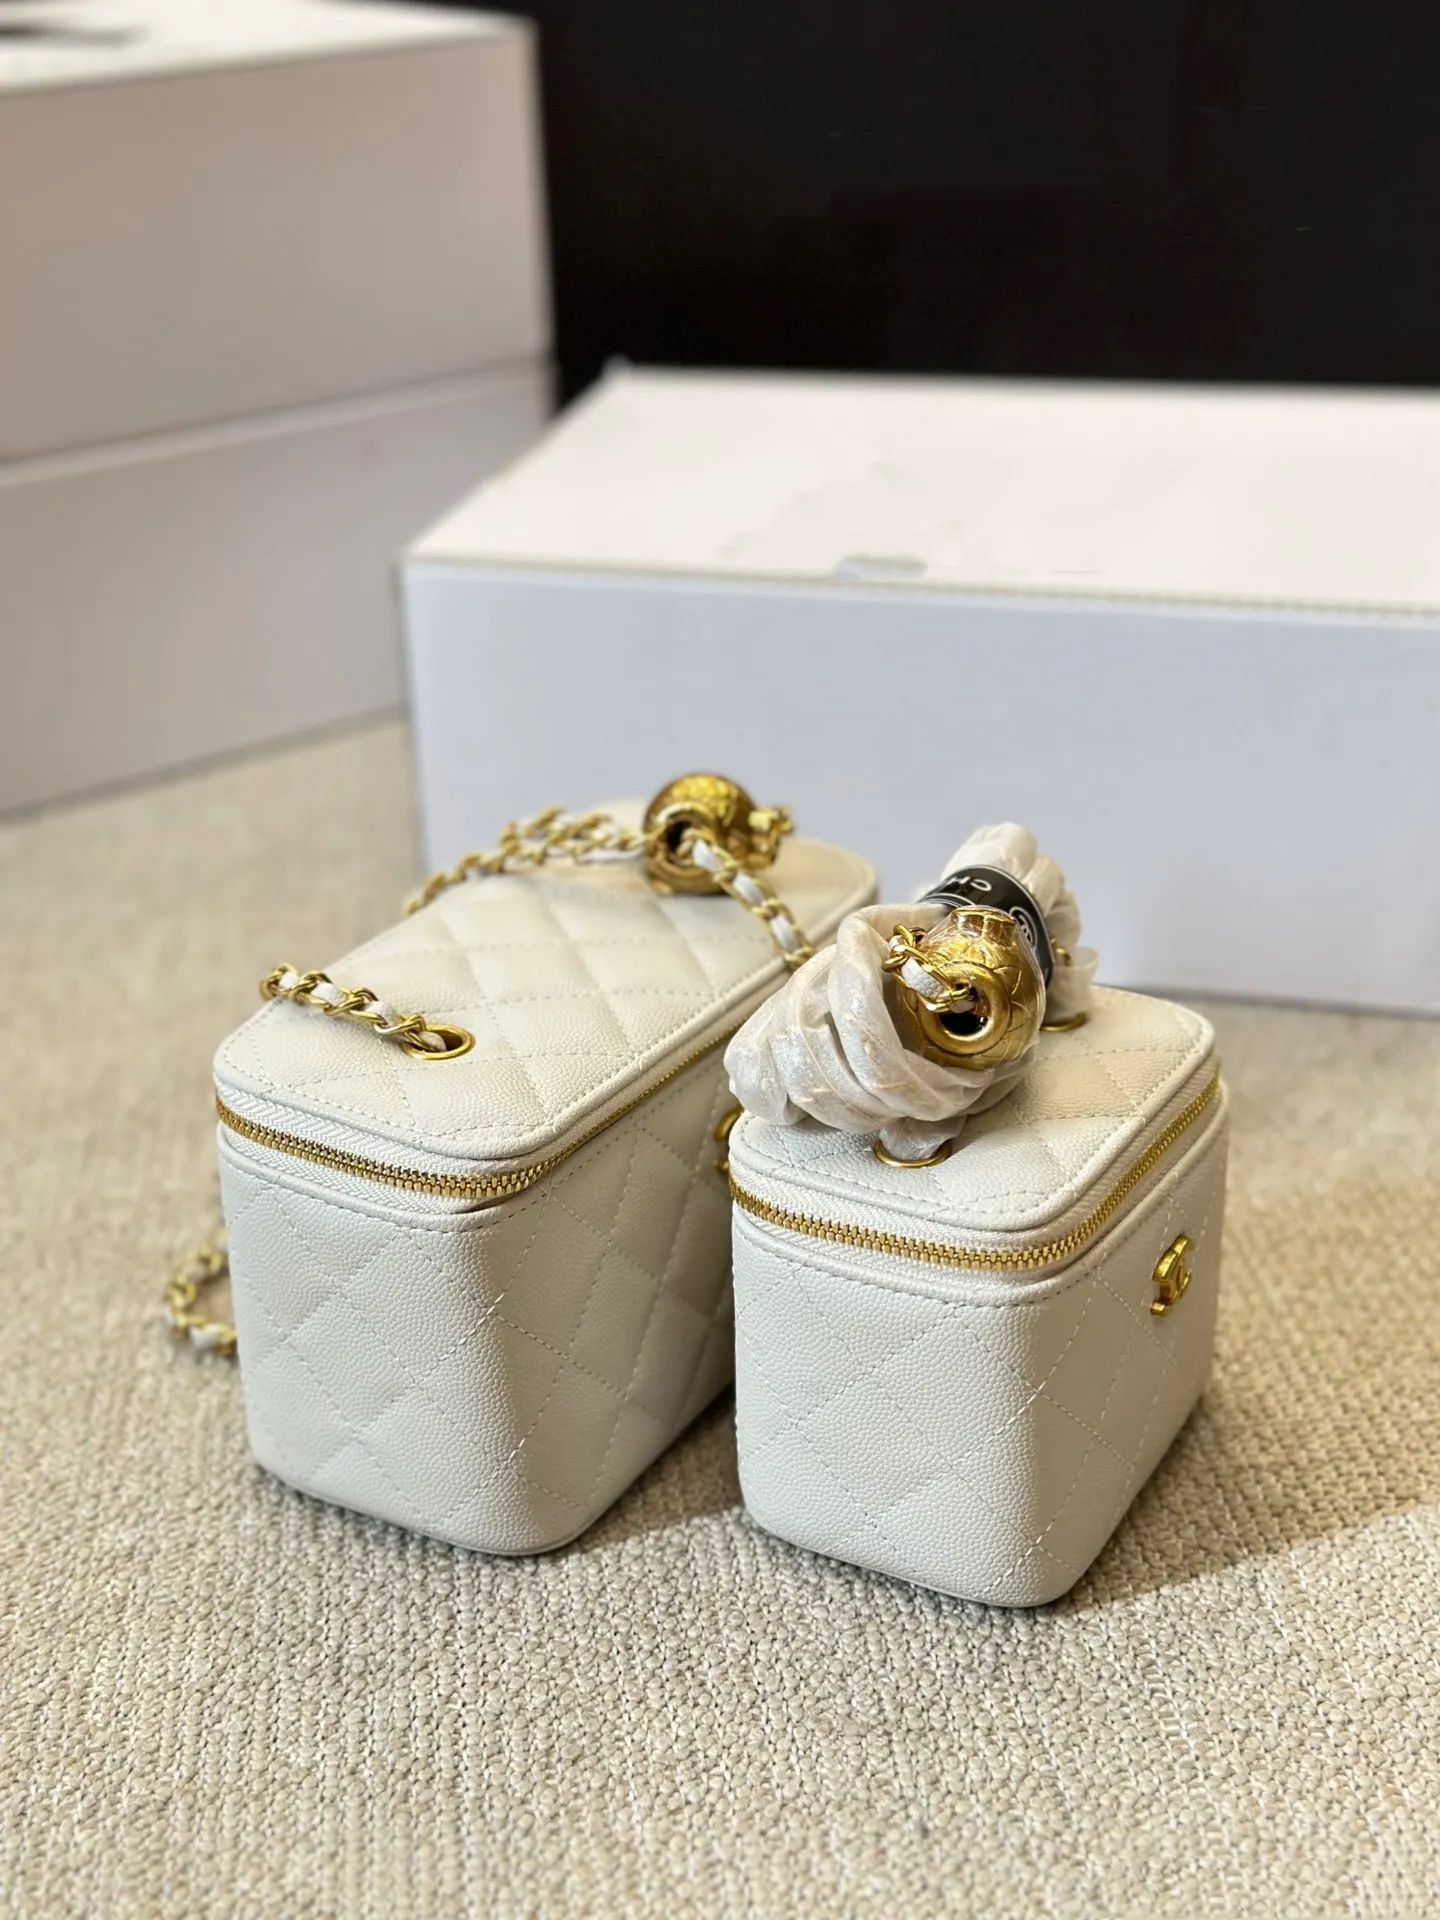 Borse da scatola di lusso a vendita calda da donna piccola borse a messaggero popolare borse di design per giovani donne